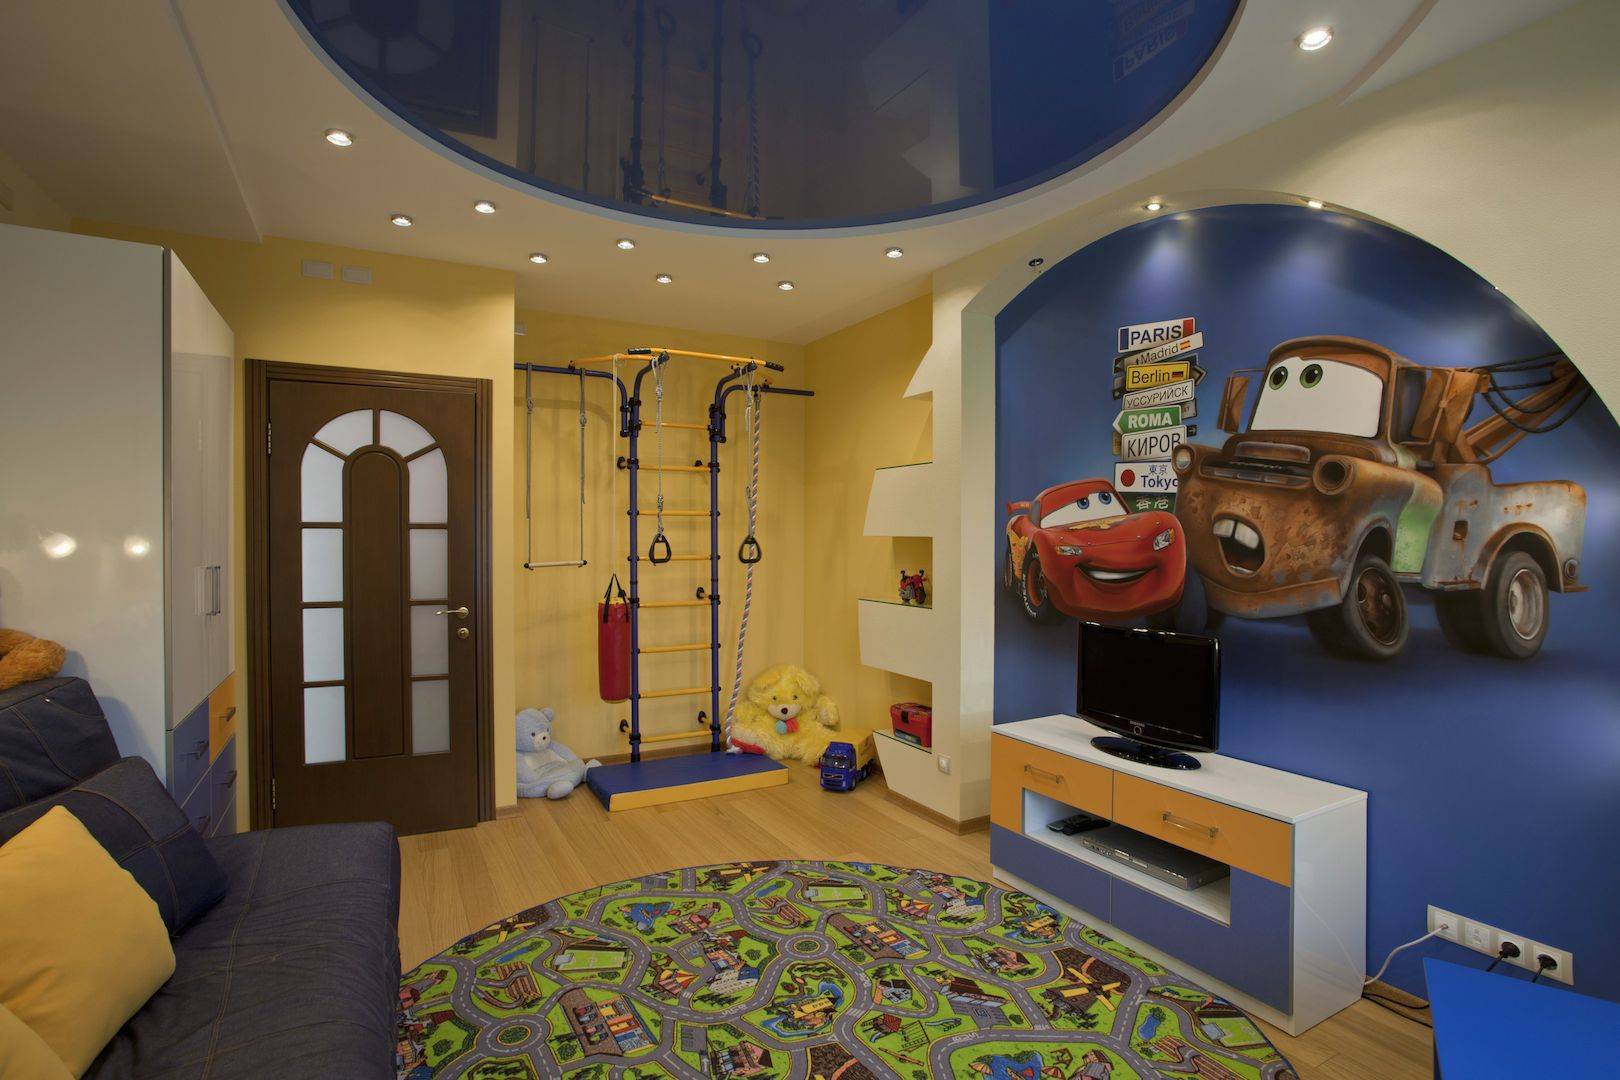 Потолок из гипсокартона в детскую: фото и видео красивых конструкций для комнаты девочки и мальчика